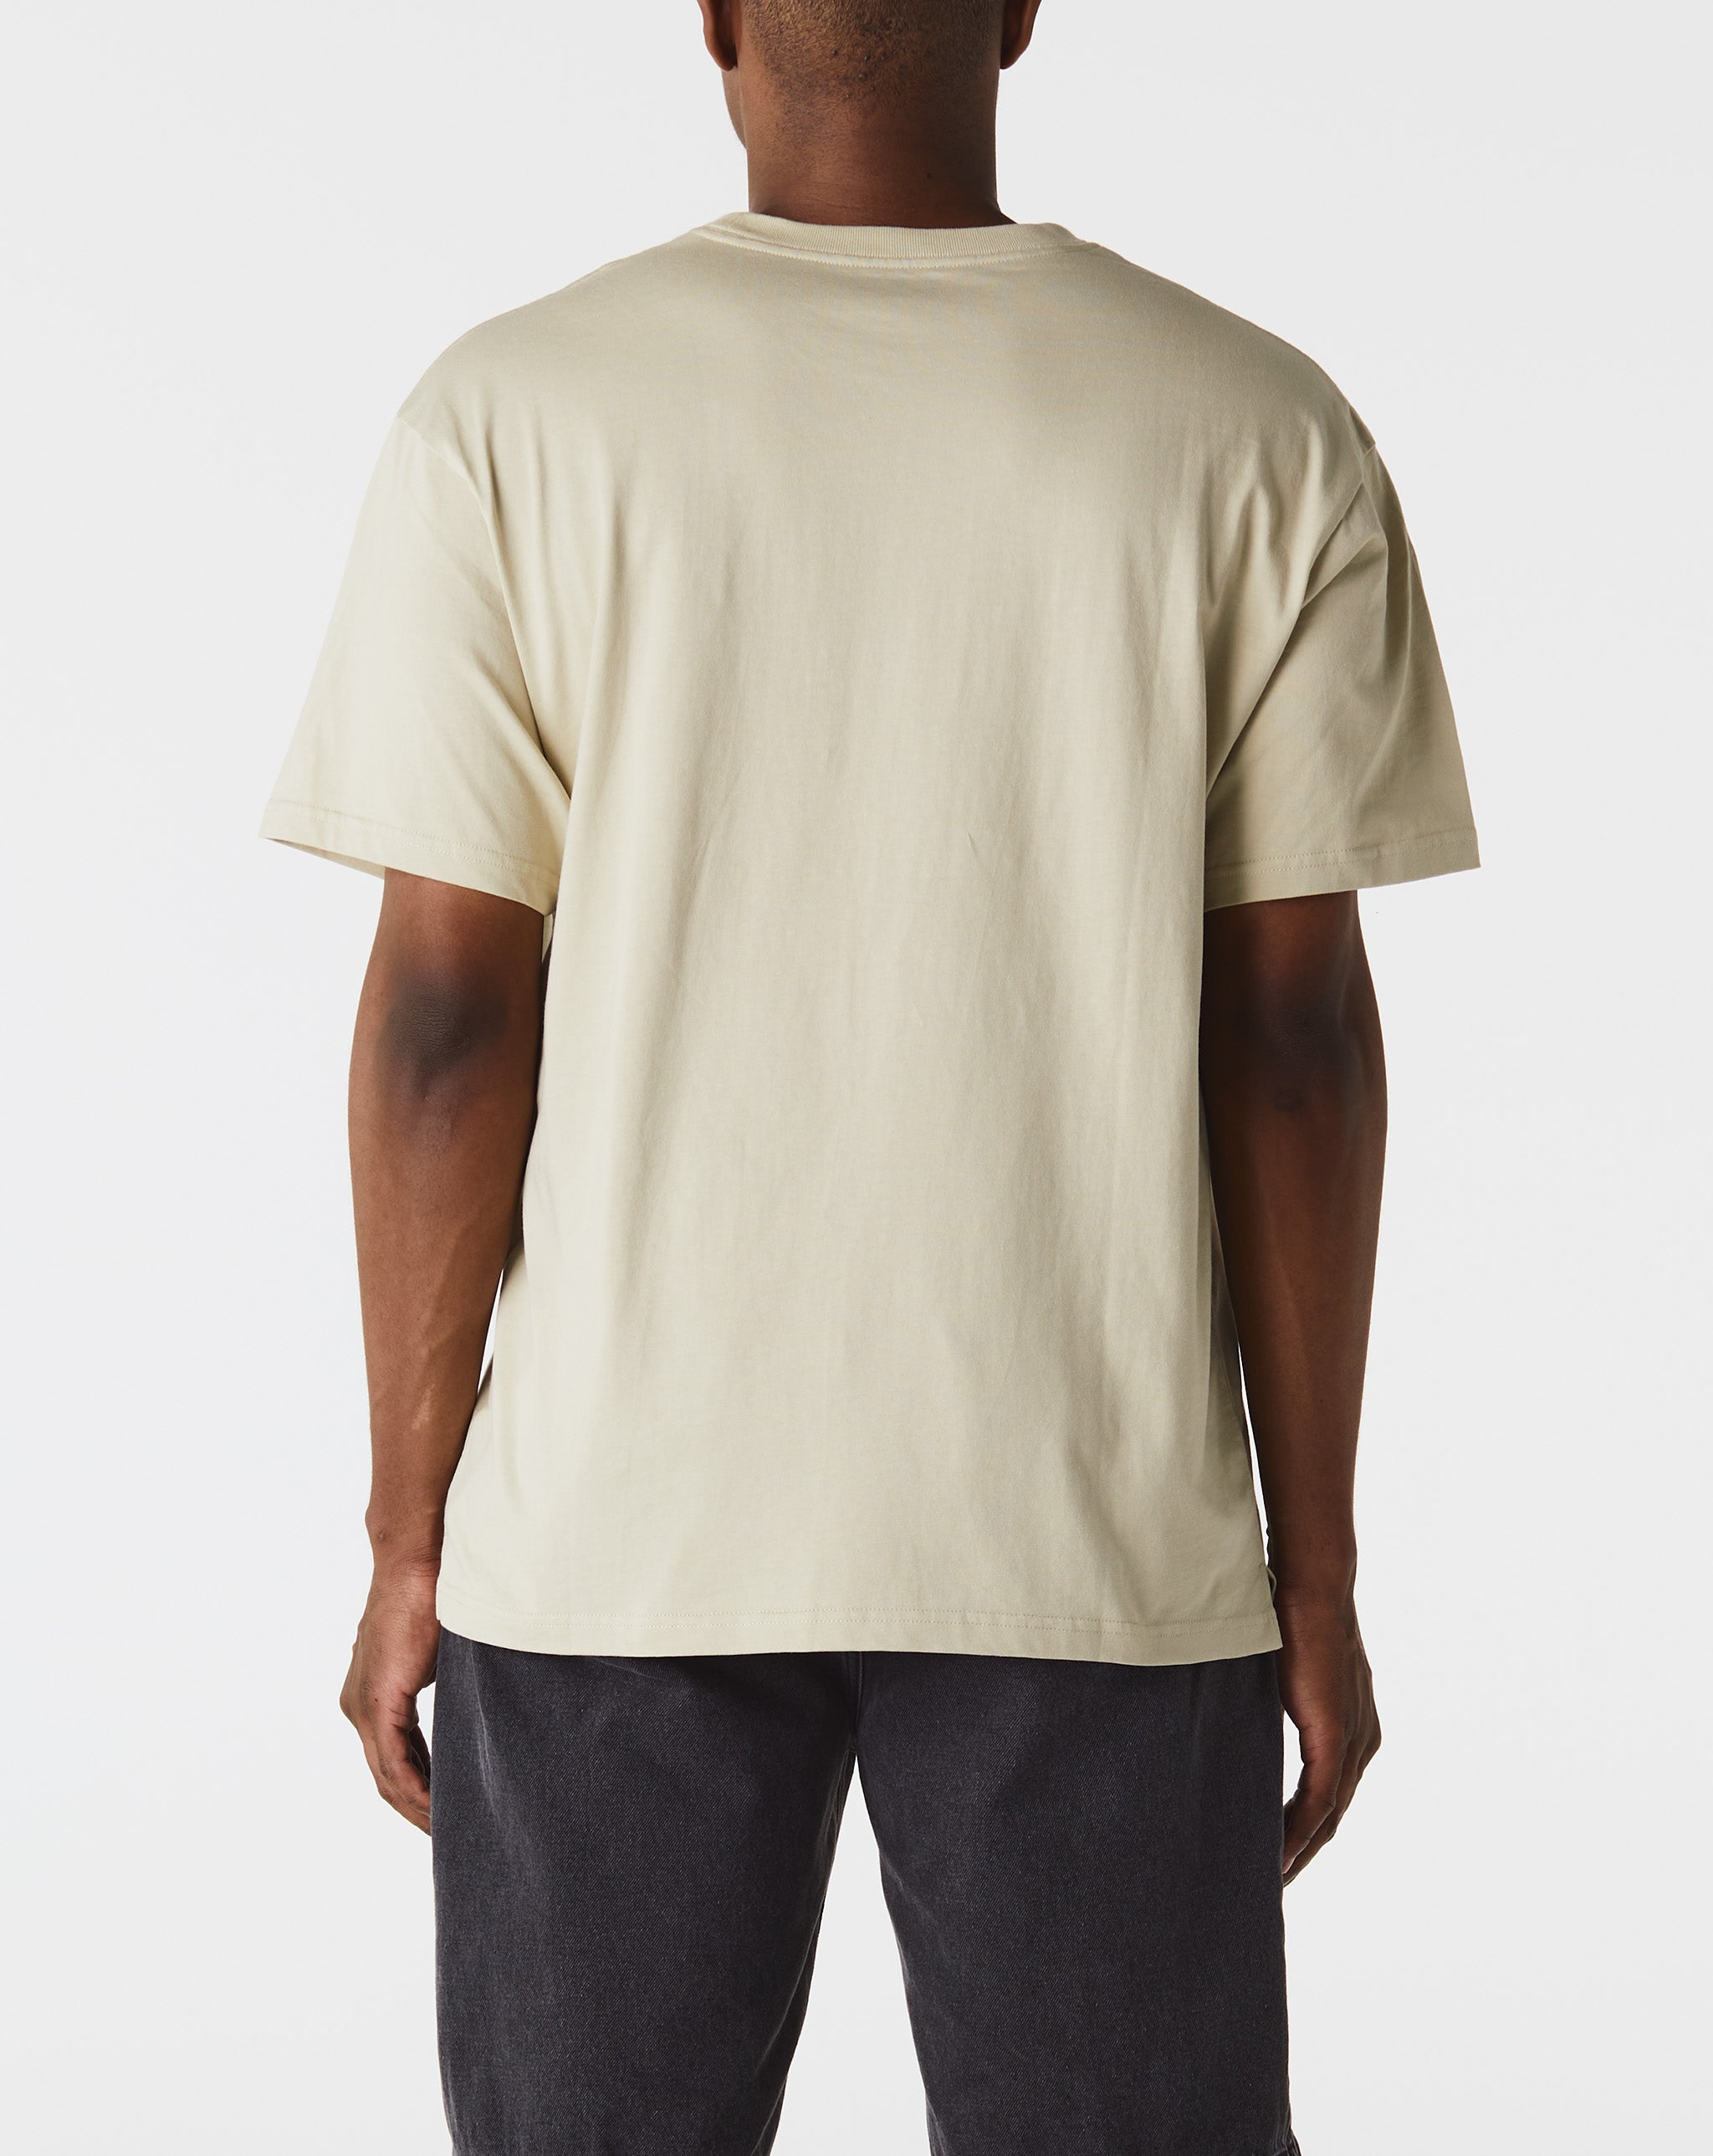 Carhartt WIP Madison T-Shirt  - Cheap Urlfreeze Jordan outlet